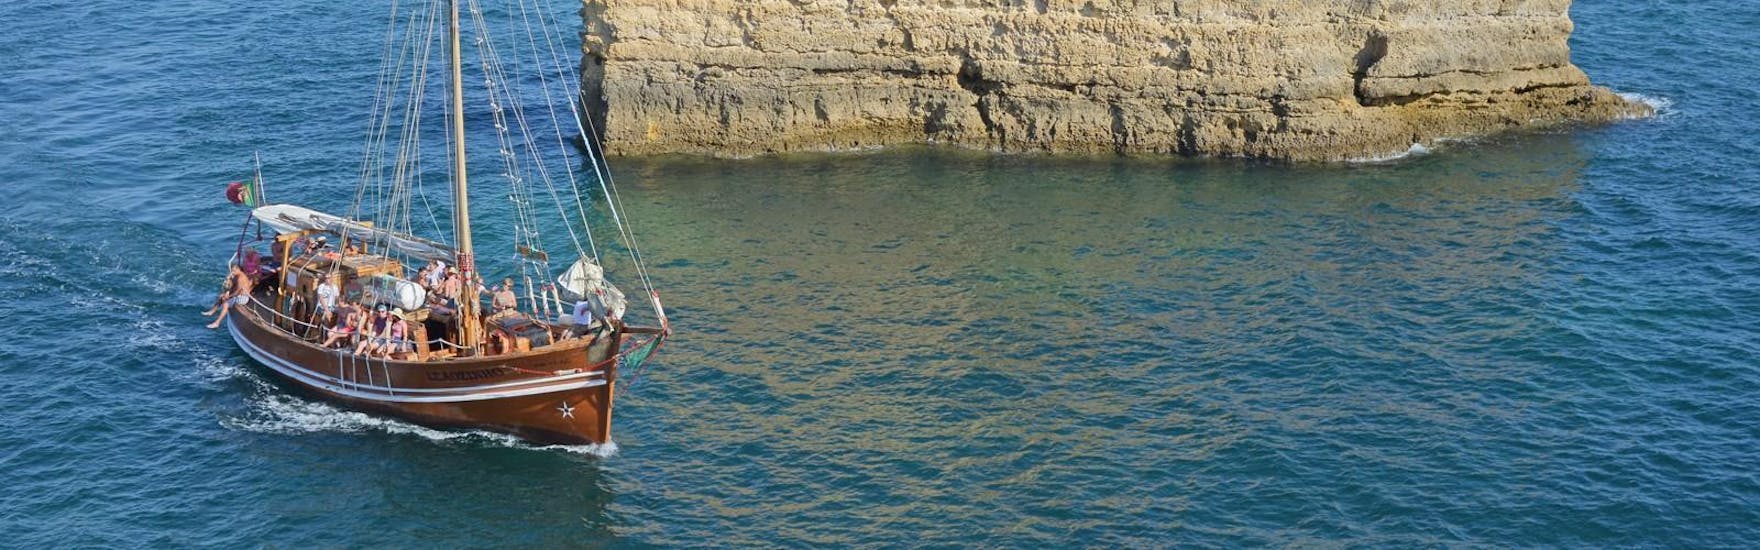 Les vacanciers apprécient la vue imprenable lors de leur balade en bateau pirate avec Dream Wave le long de la côte de l'Algarve.